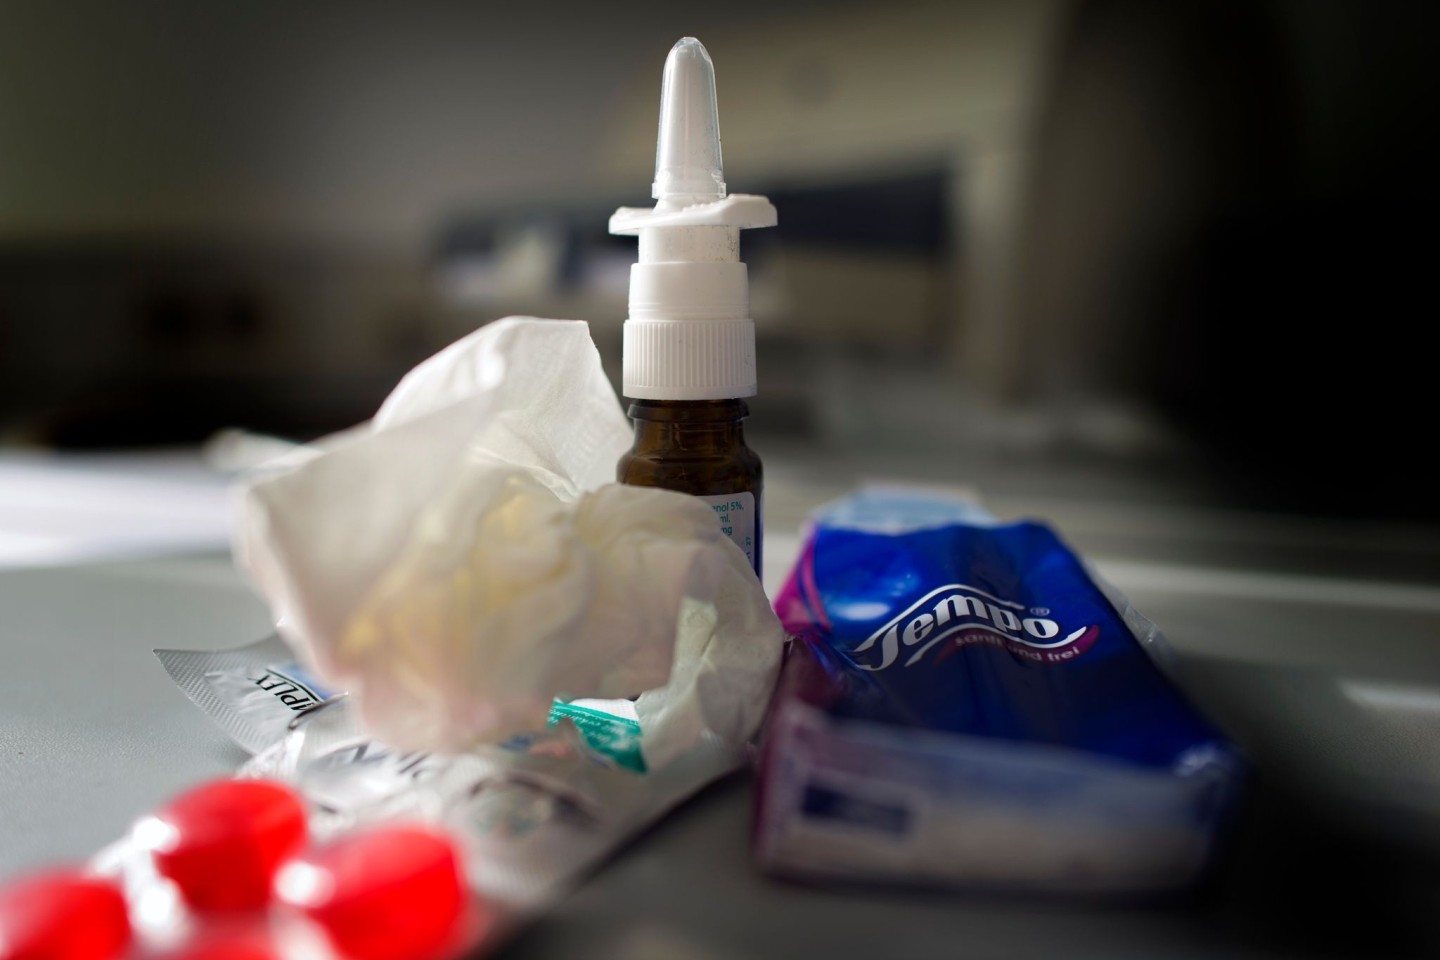 Die Zahl der gemäß Infektionsschutzgesetz im Labor bestätigten und ans RKI gemeldeten Grippefälle für die vergangene Woche betrug rund 27.200.